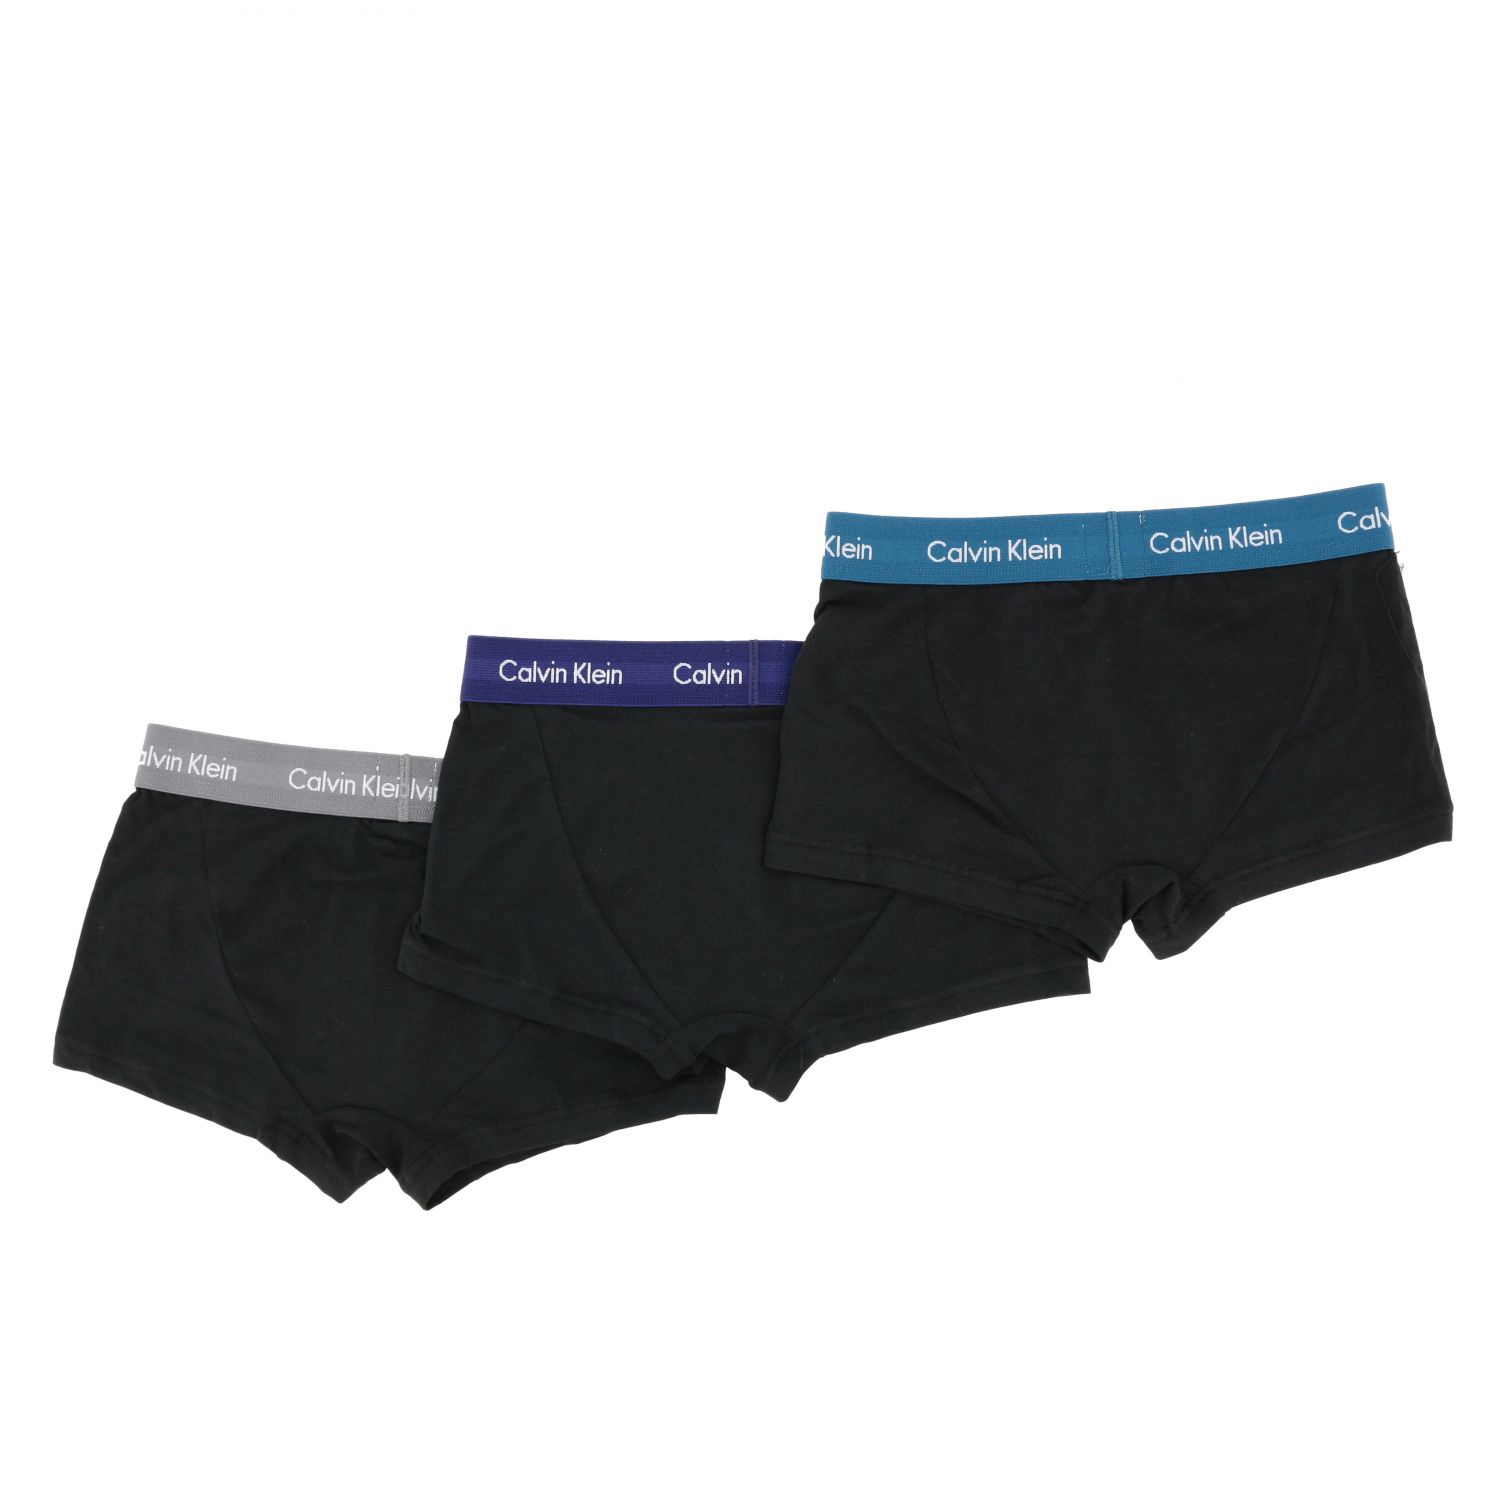 Calvin Klein Underwear Outlet: Set 3 Slips mit Logo - Schwarz | Calvin